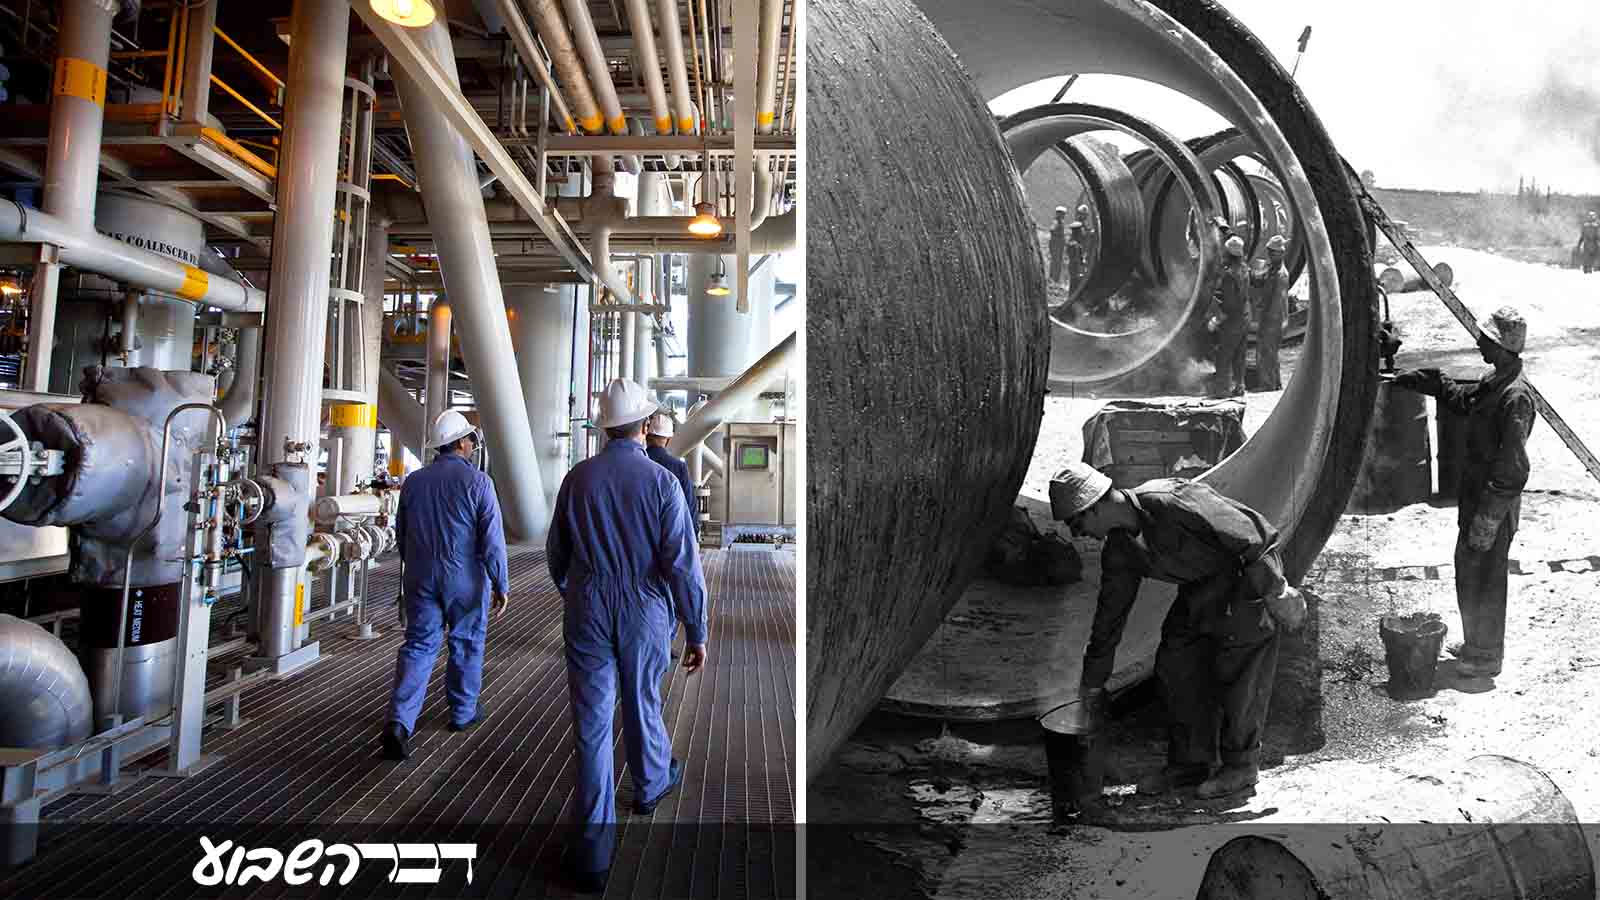 הנחת צינורות בפרויקט המוביל הארצי 1959 וצינורות הובלת גז טבעי במאגר תמר 2013 (צילום: כהן פריץ/ לע"מ ומשה שי / פלאש 90).